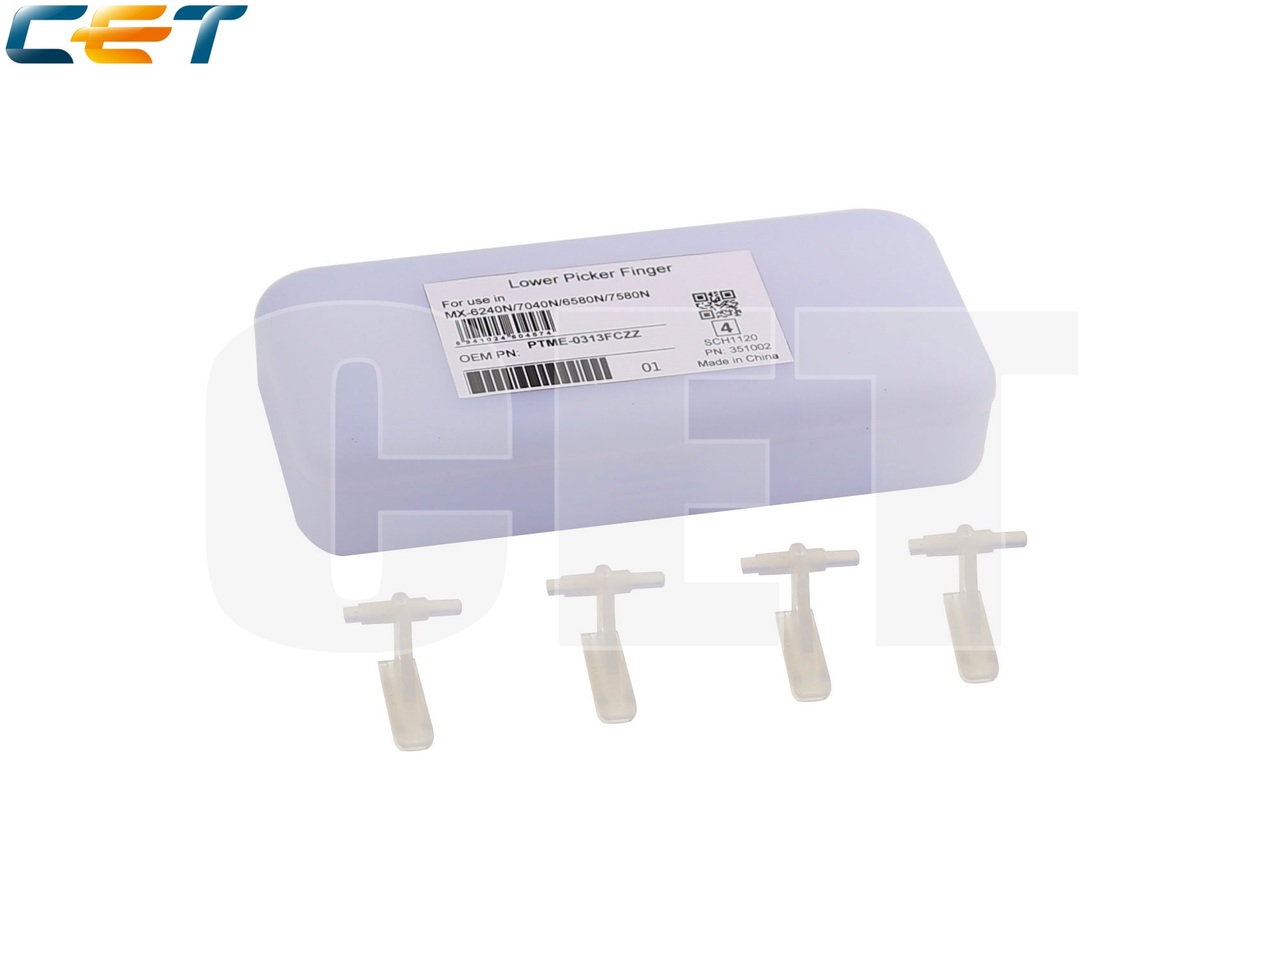 Сепаратор резинового вала PTME-0313FCZZ для SHARPMX-6240N/7040N/6580N/7580N (CET), CET351002